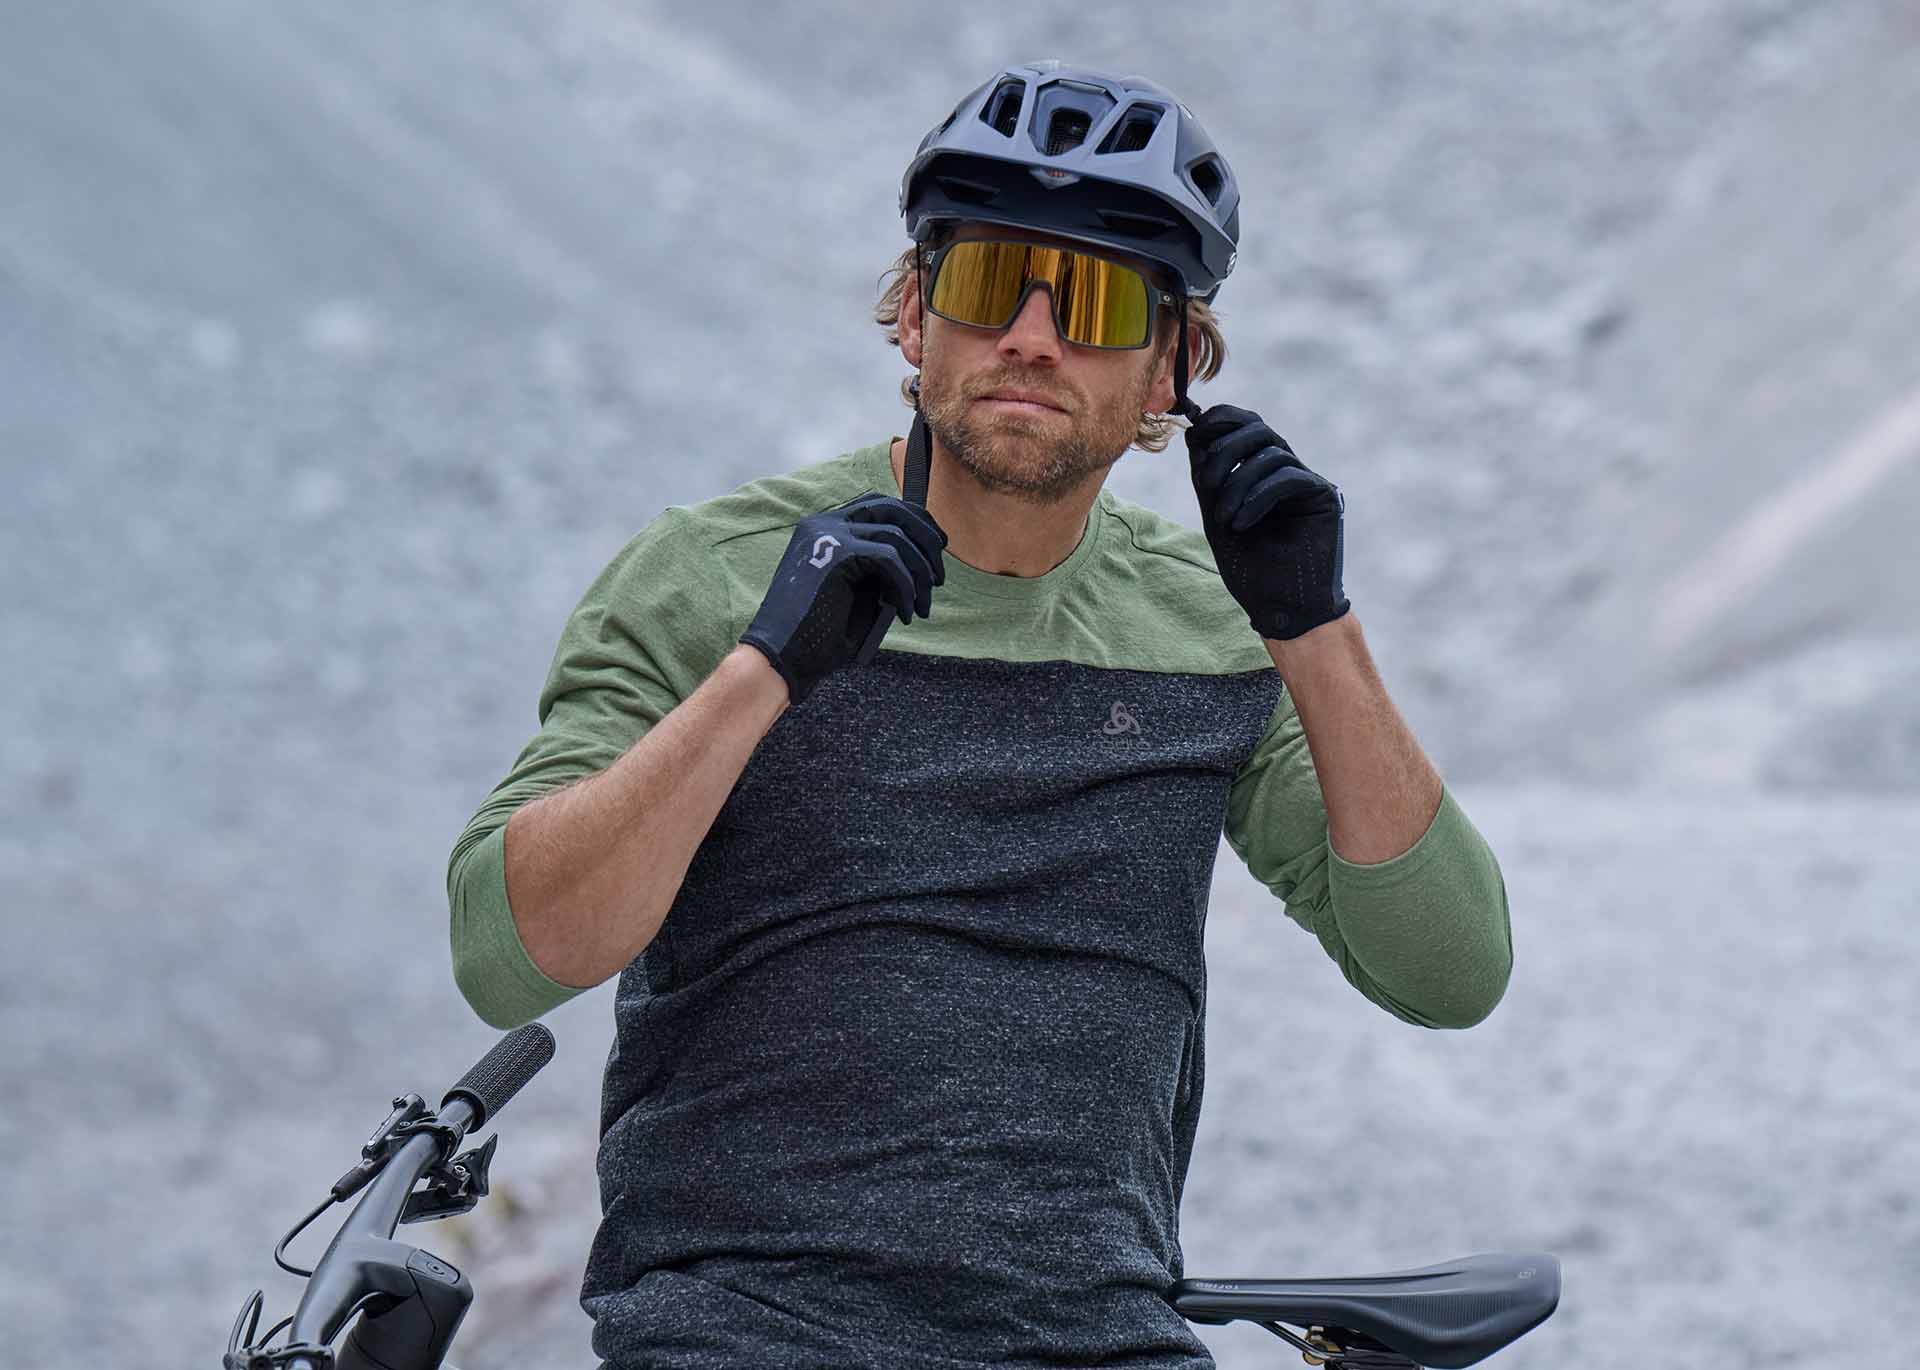 A man in ODLOS new mountain biking gear